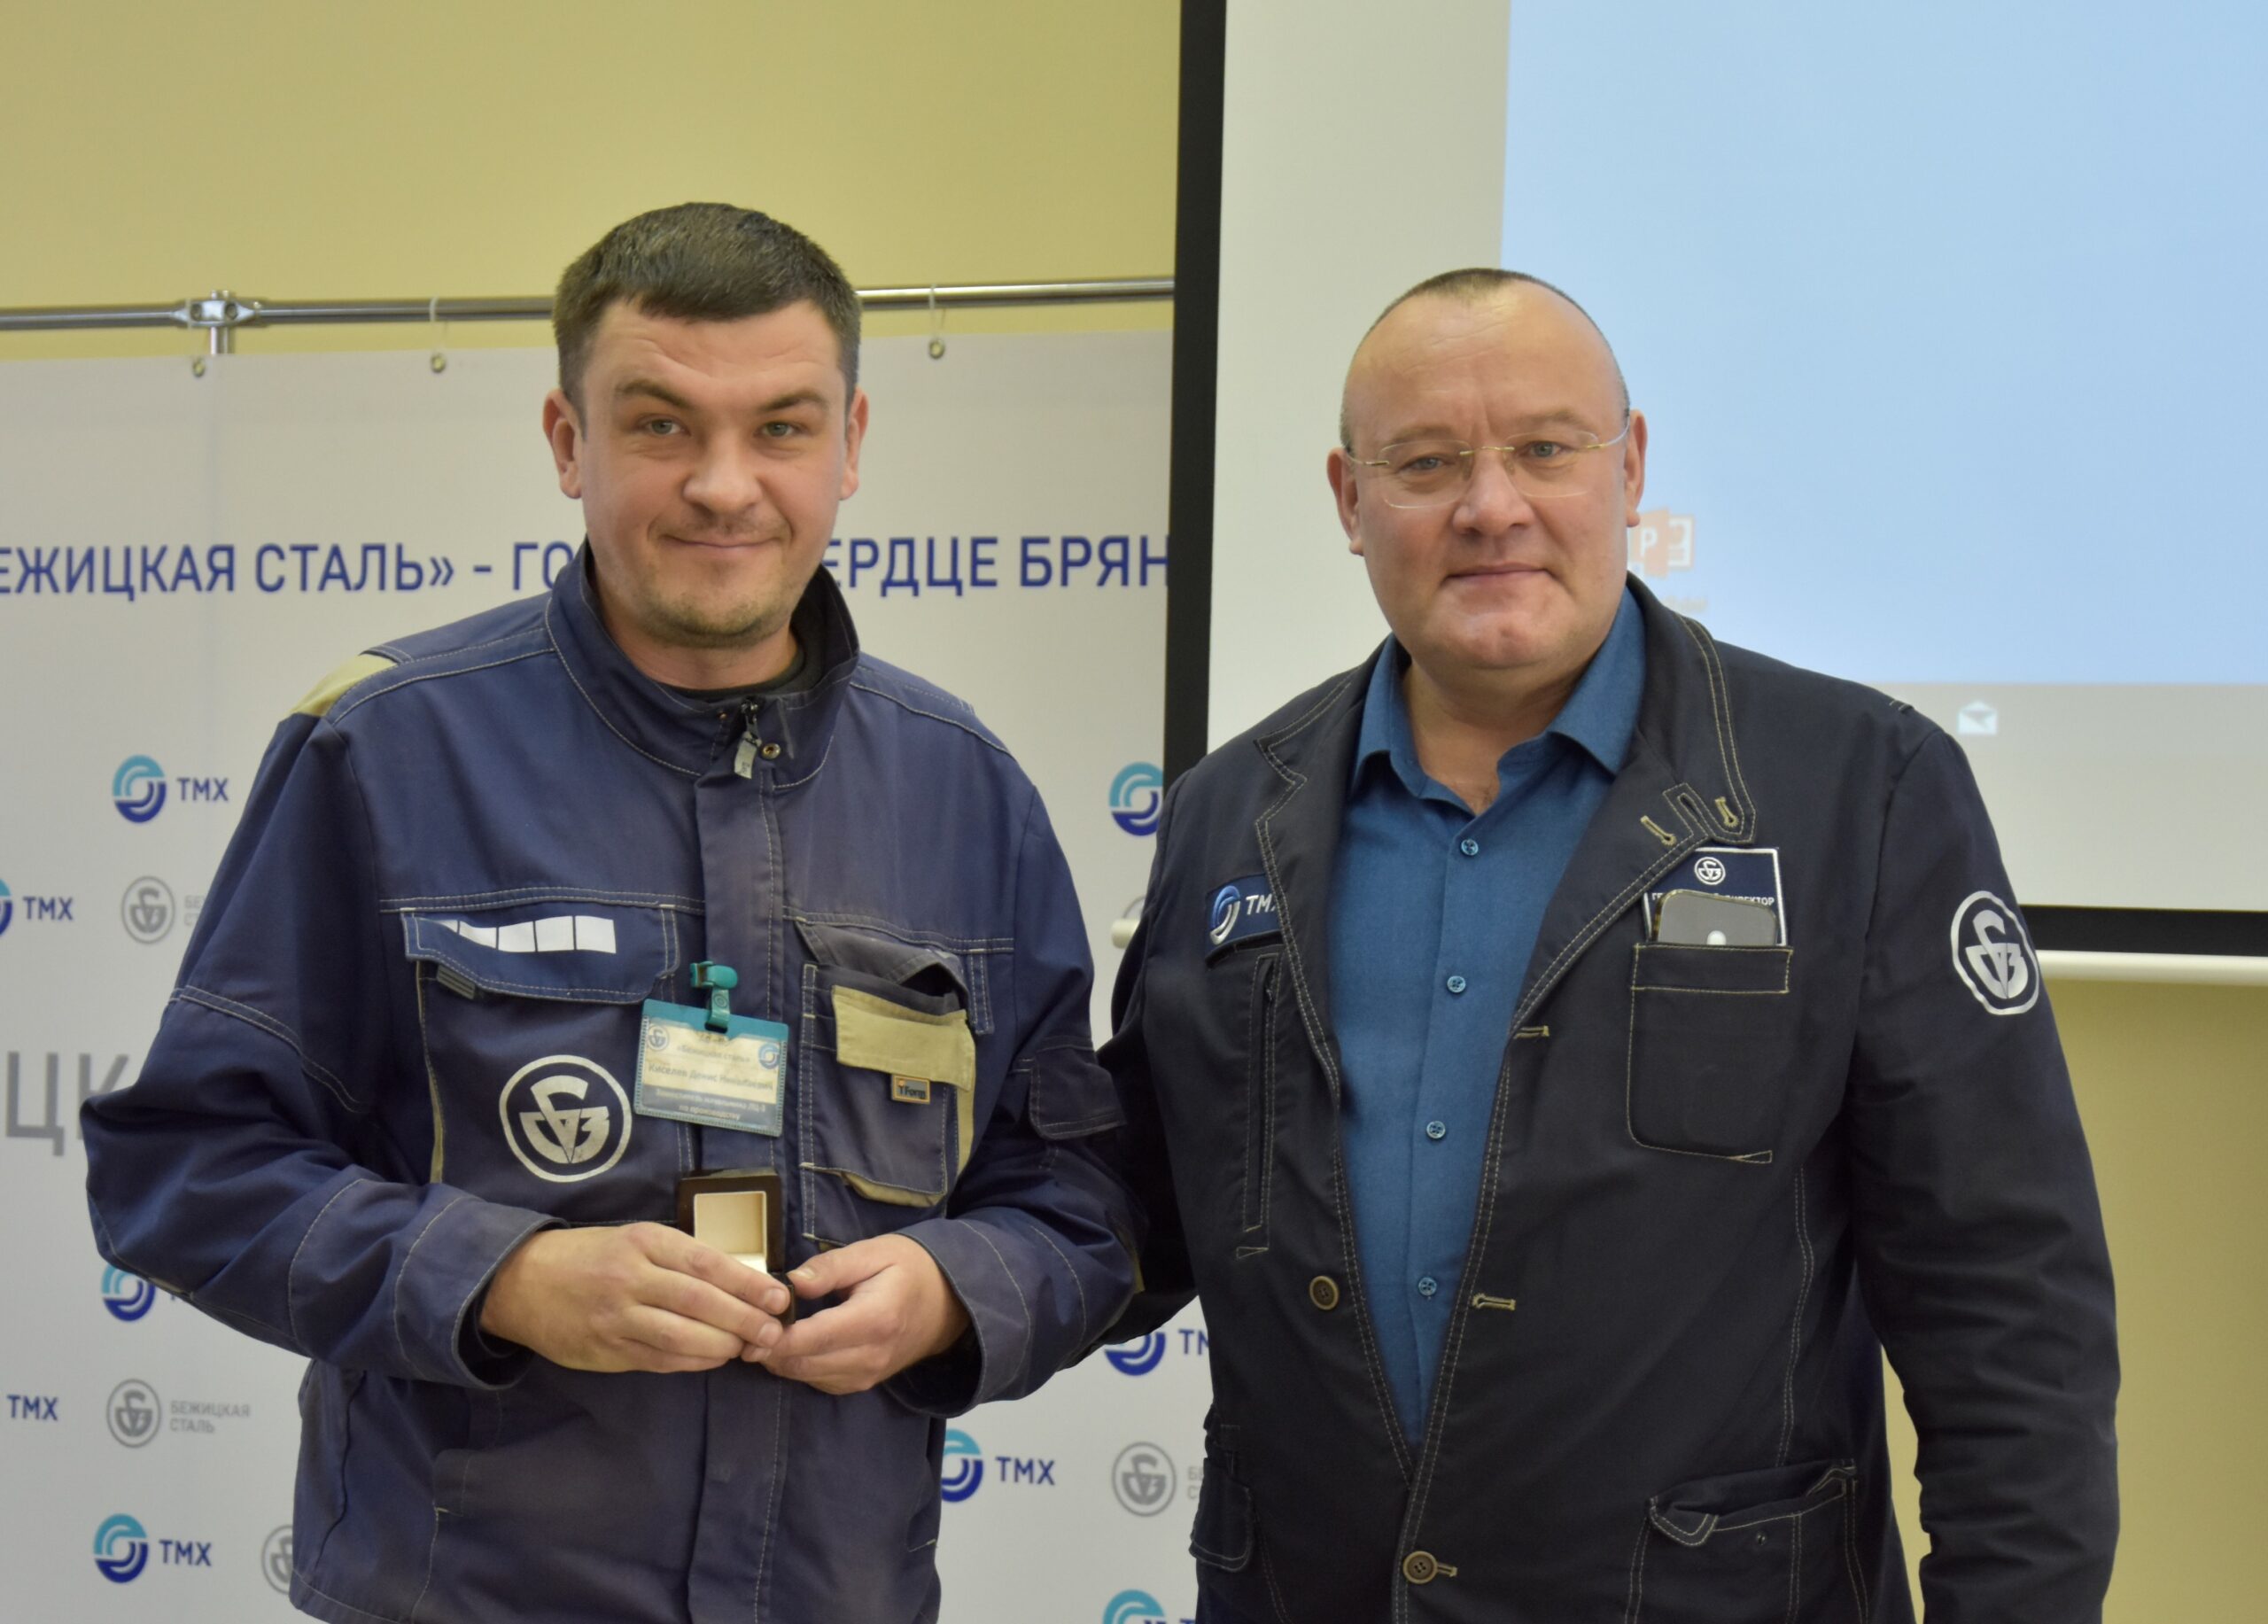 Троим работникам брянского стальзавода вручили Знаки отличия